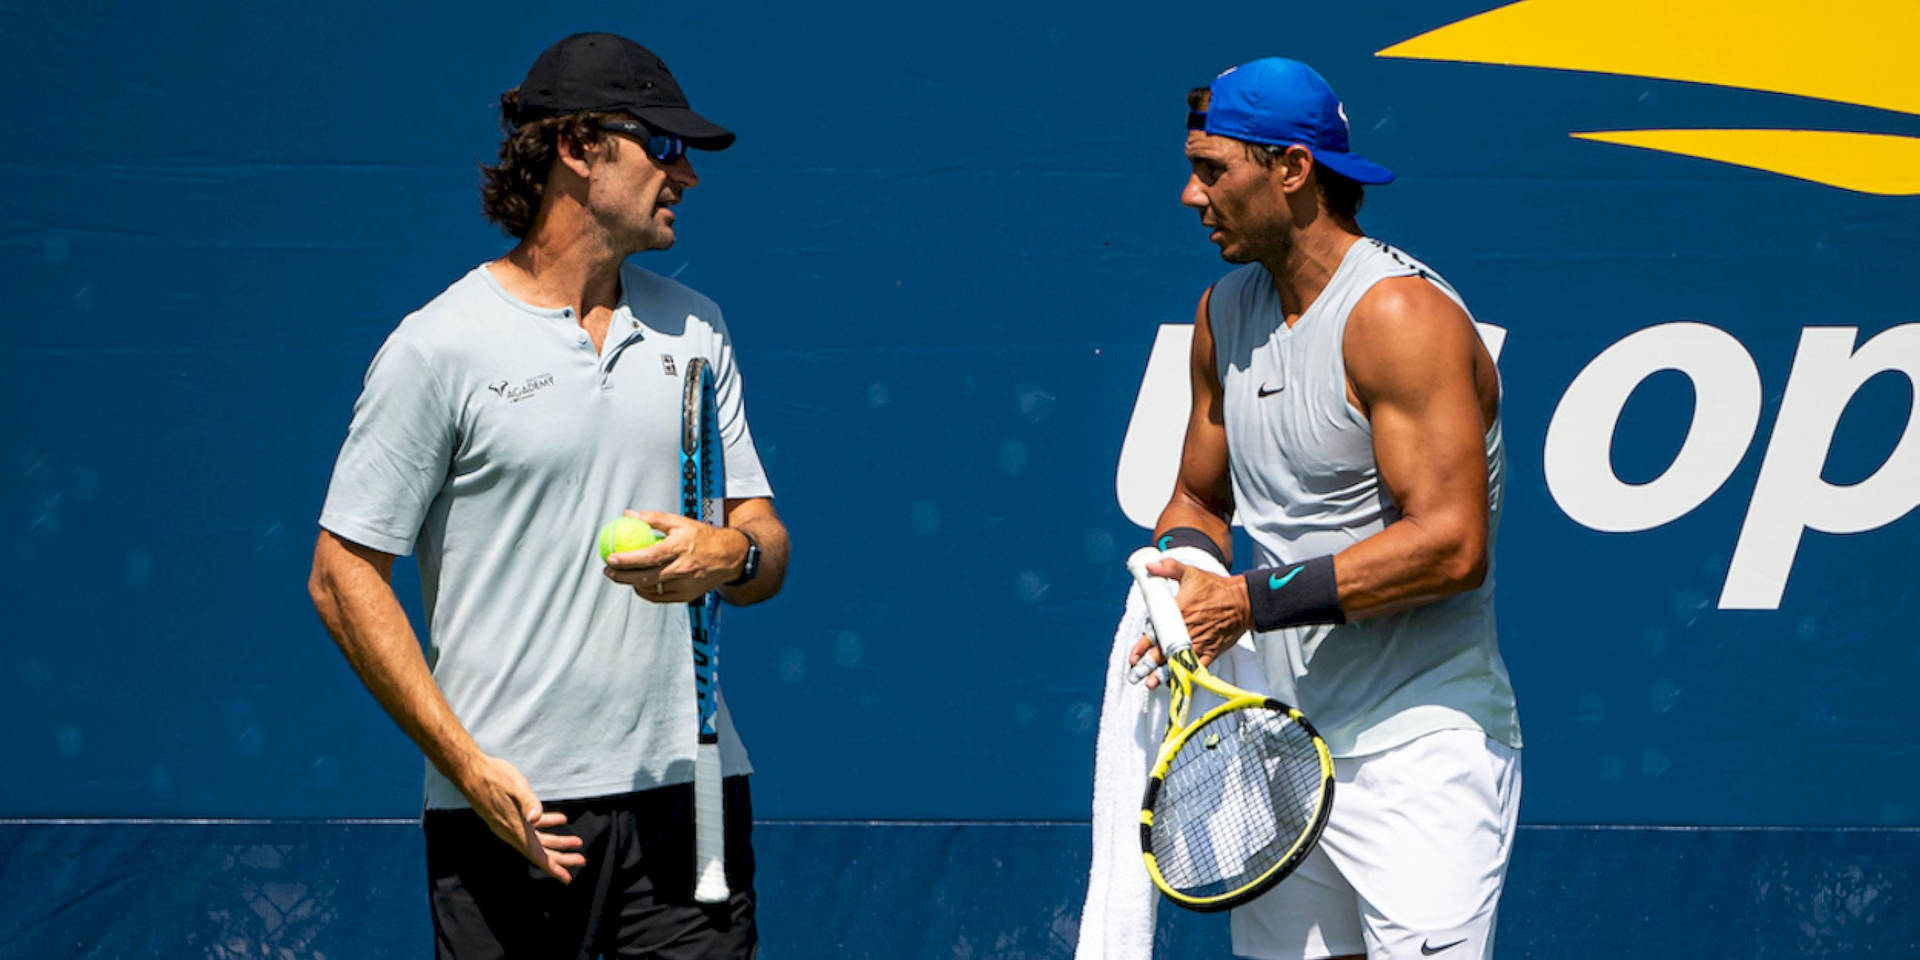 Carlos Moya og Nadal snakker Wallpaper